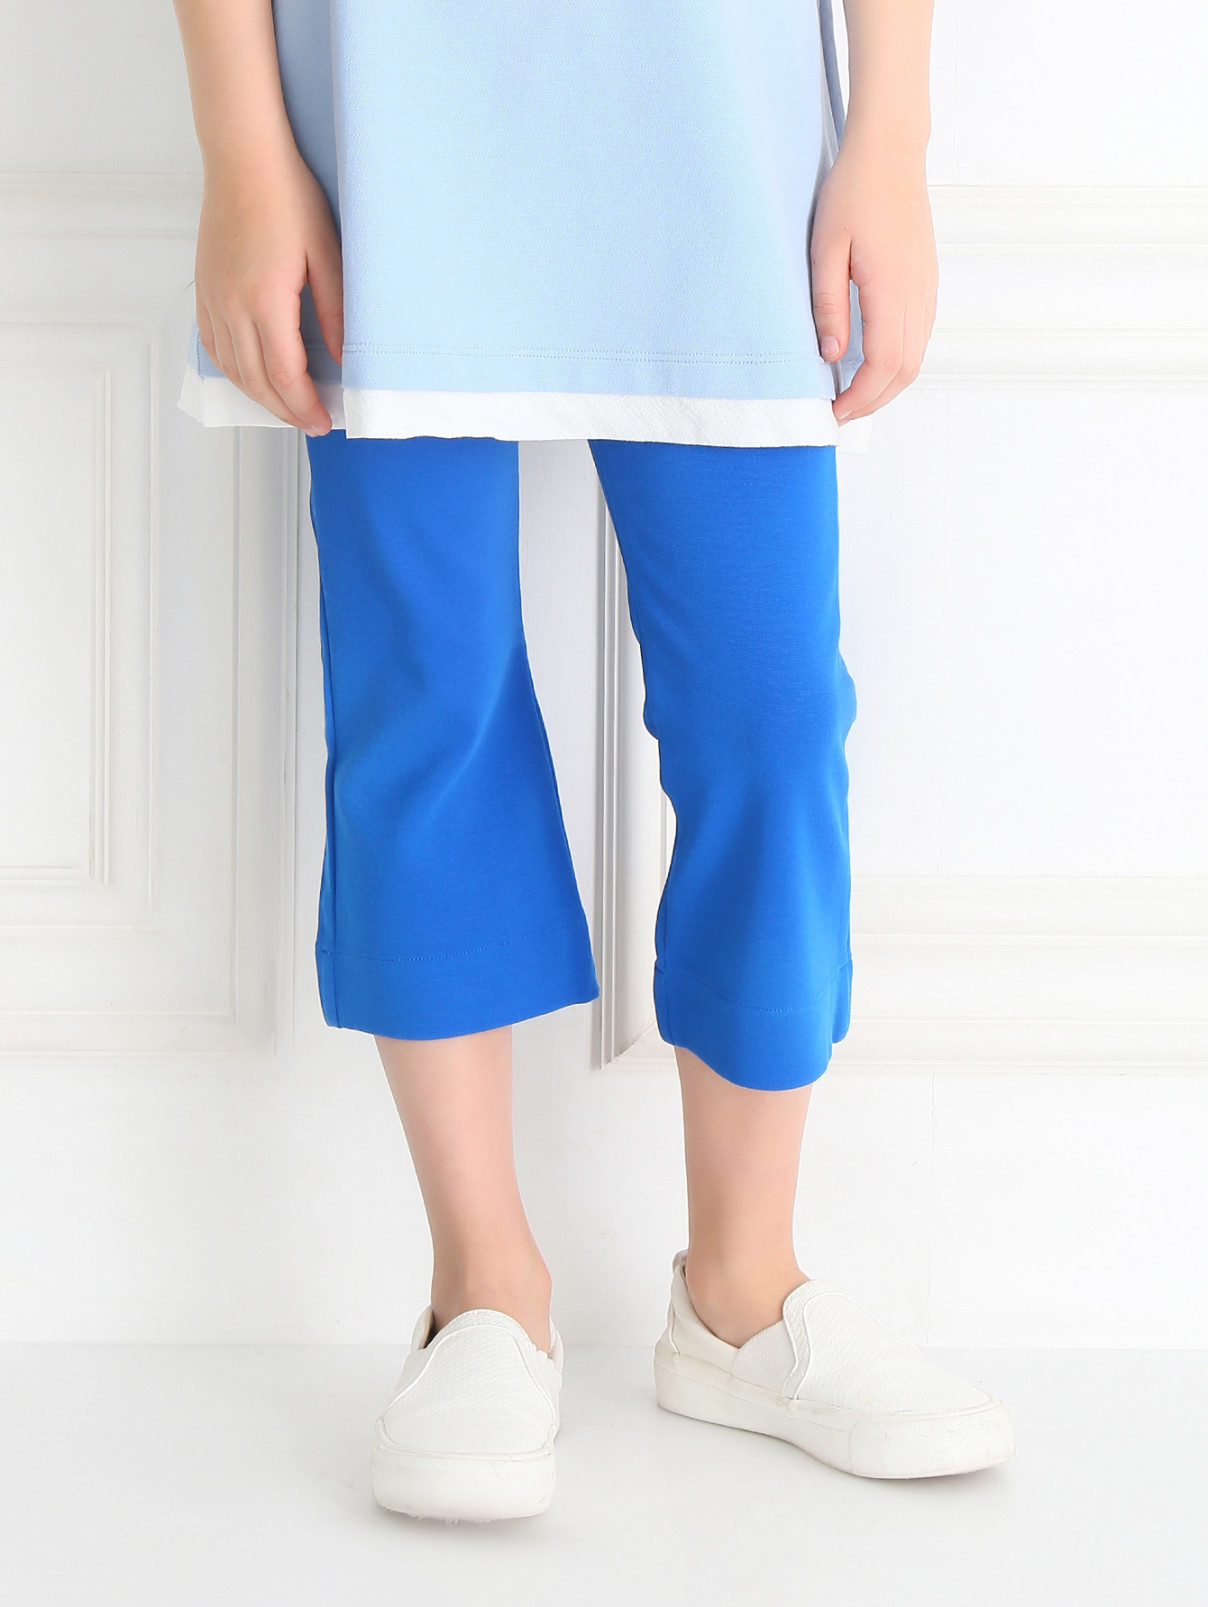 Бриджи из эластичной ткани MiMiSol  –  Модель Верх-Низ  – Цвет:  Синий